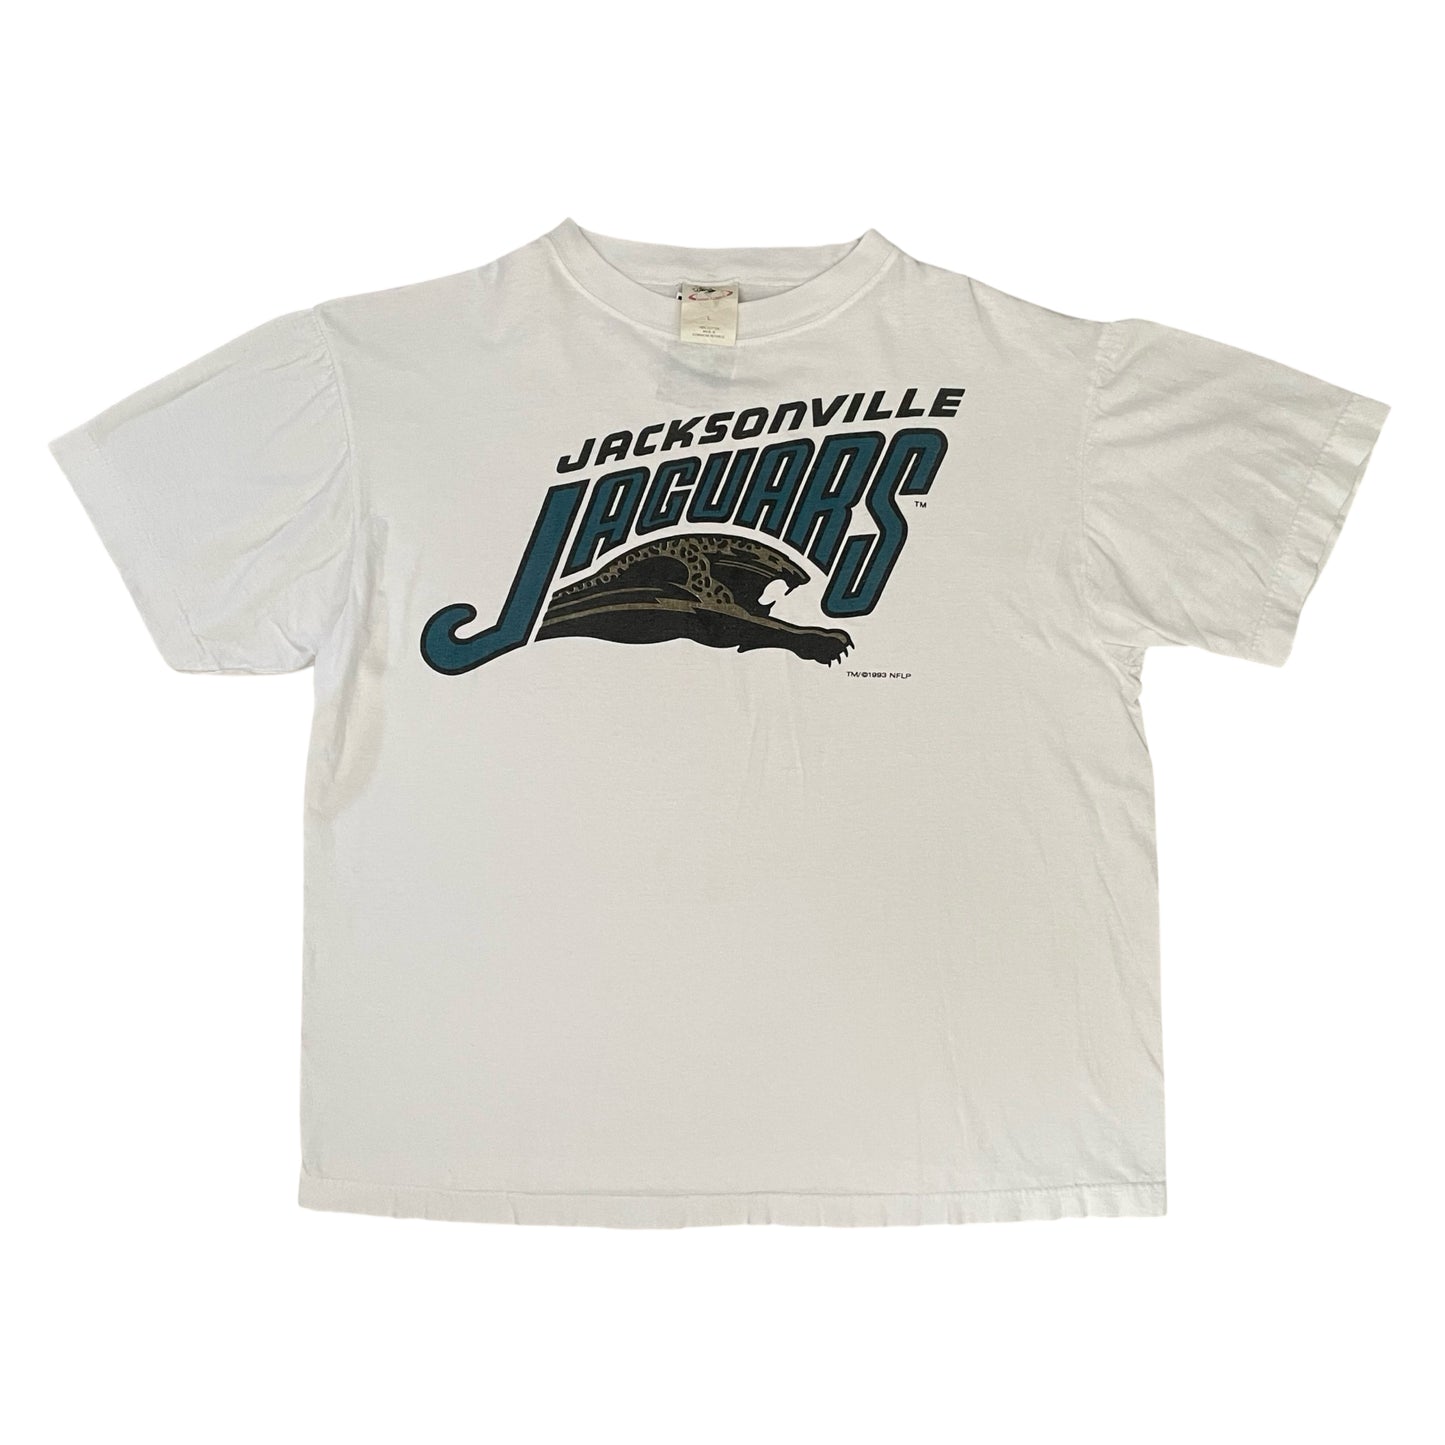 Vintage Jacksonville Jaguars 1993 banned logo size LARGE